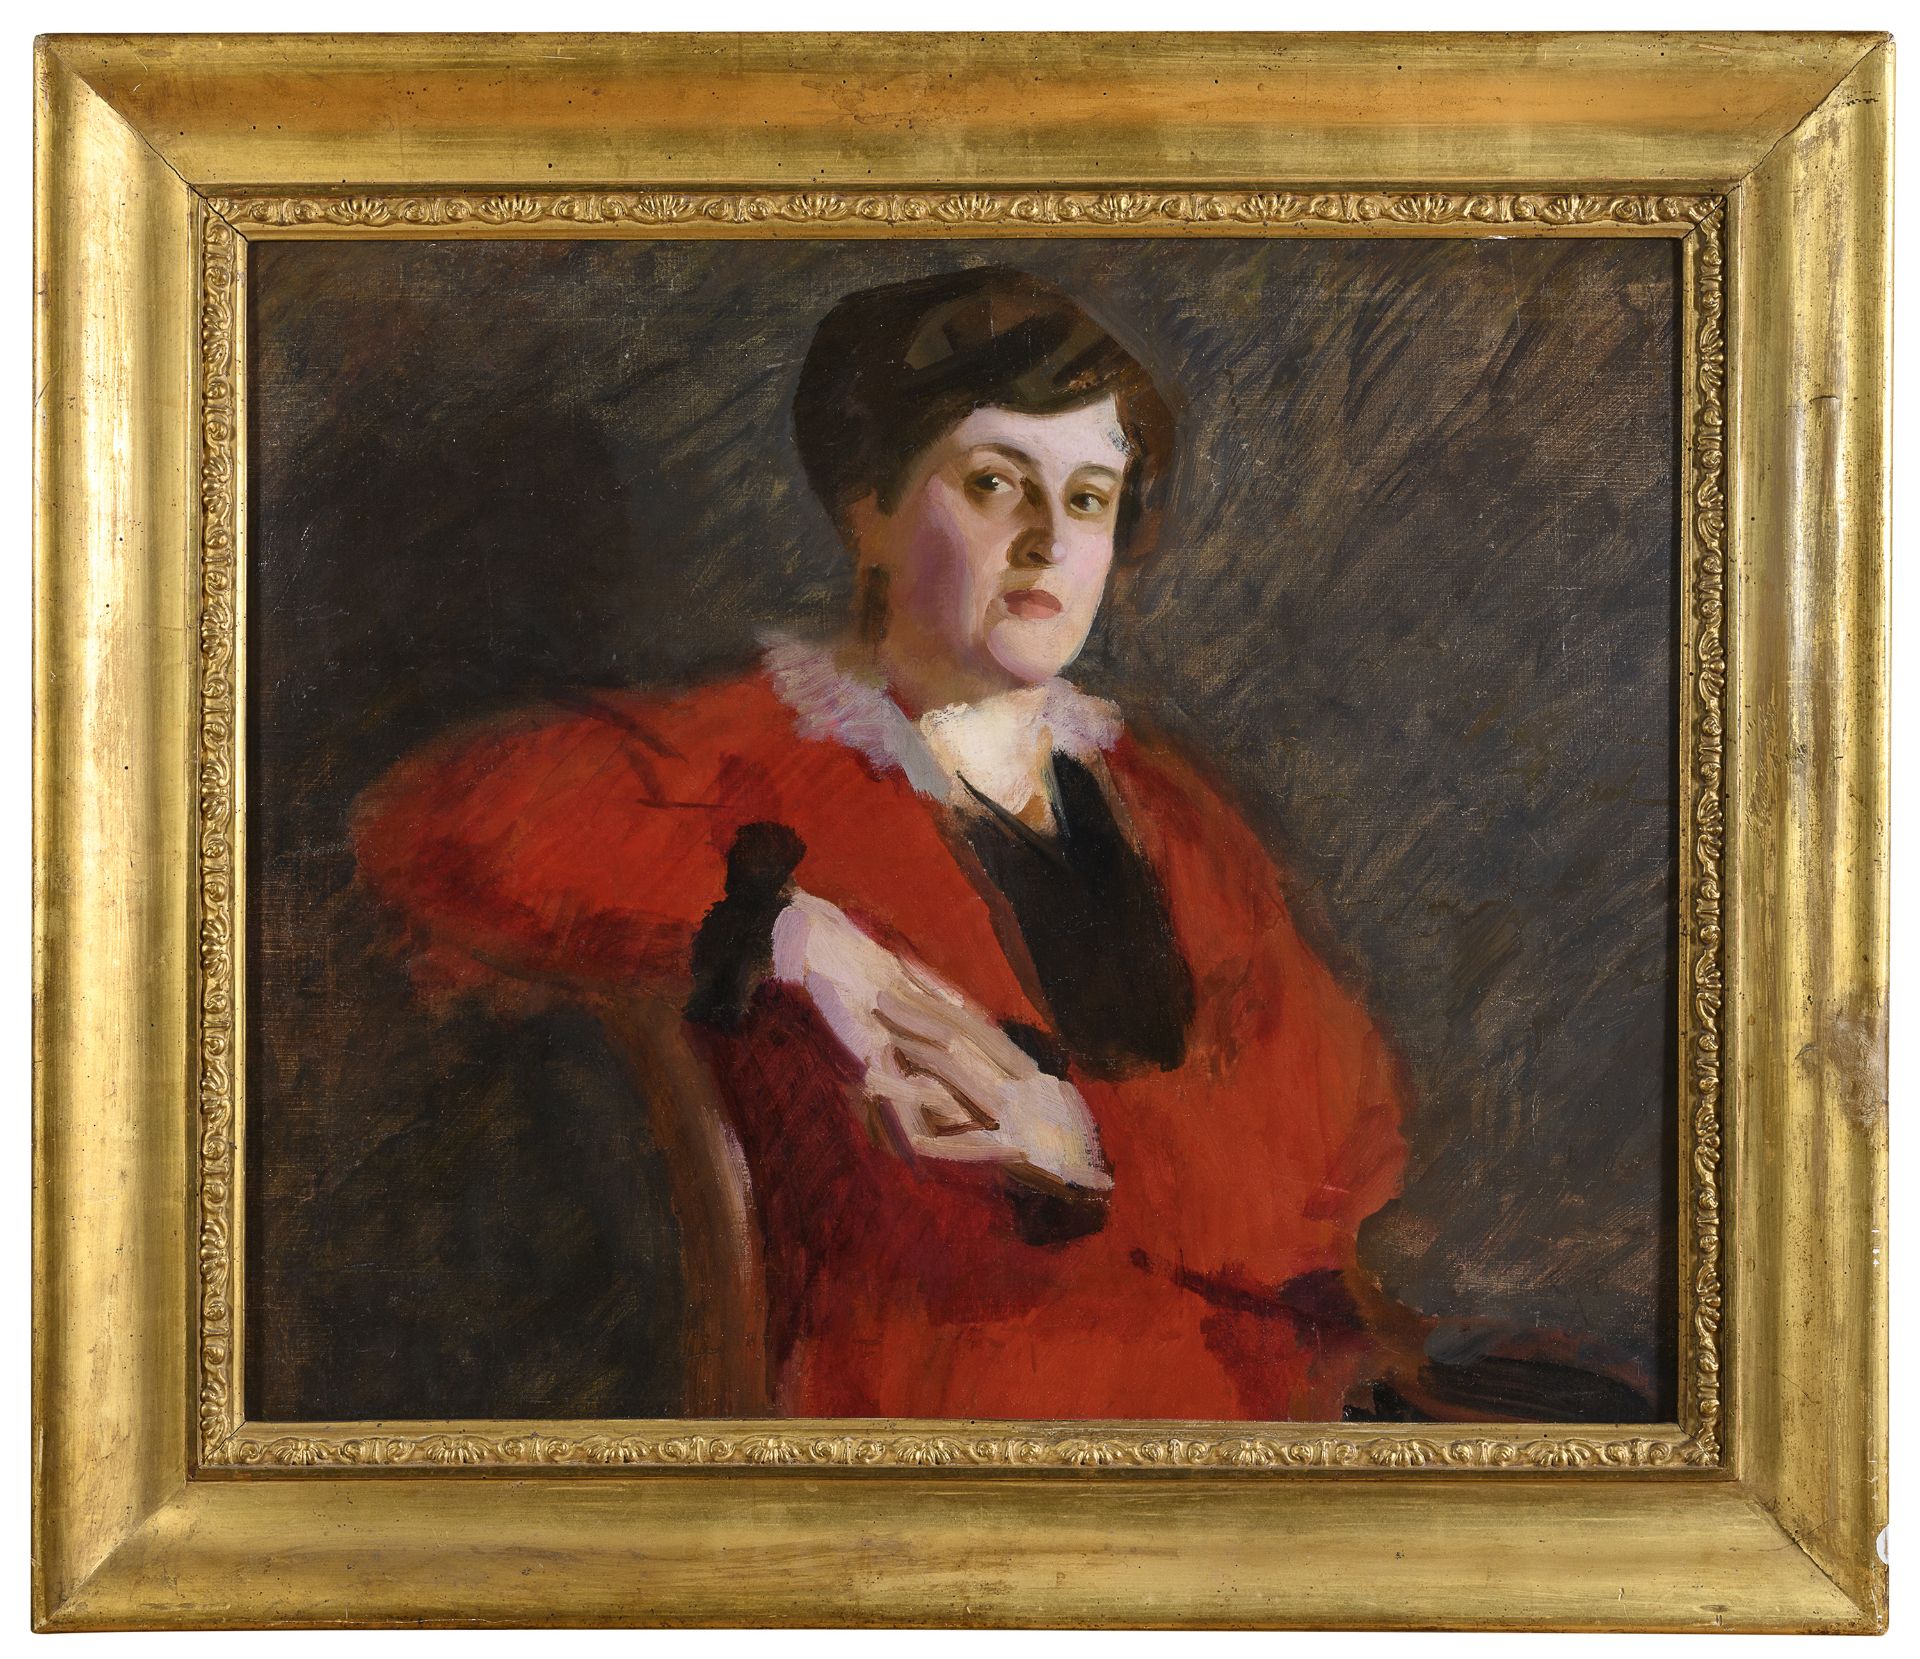 OIL PORTRAIT OF A WOMAN BY CARLO ALBERTO PETRUCCI 1910